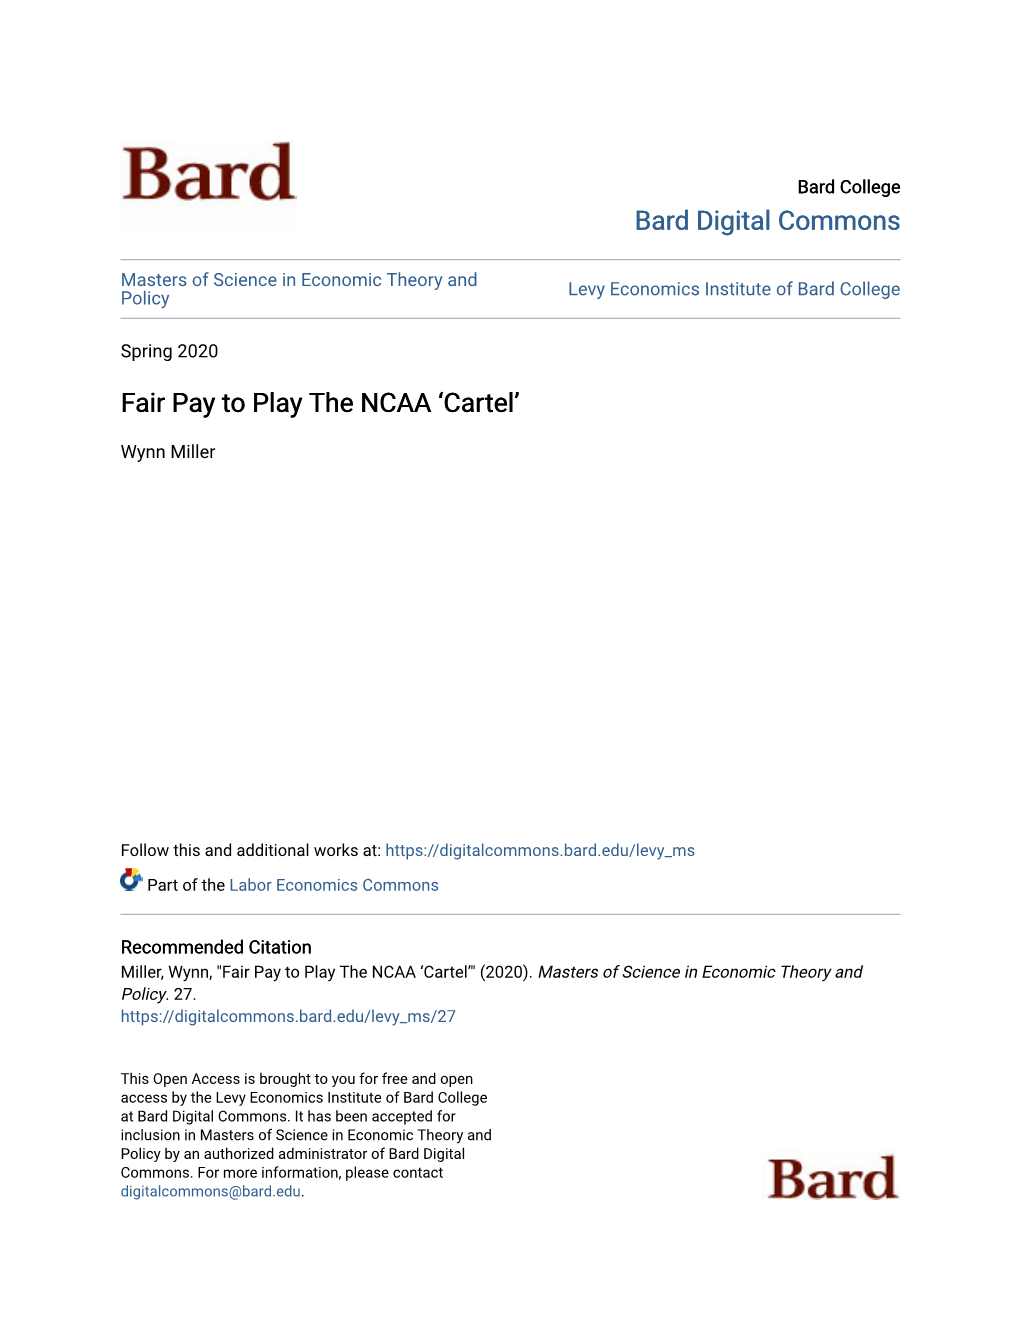 Fair Pay to Play the NCAA 'Cartel'